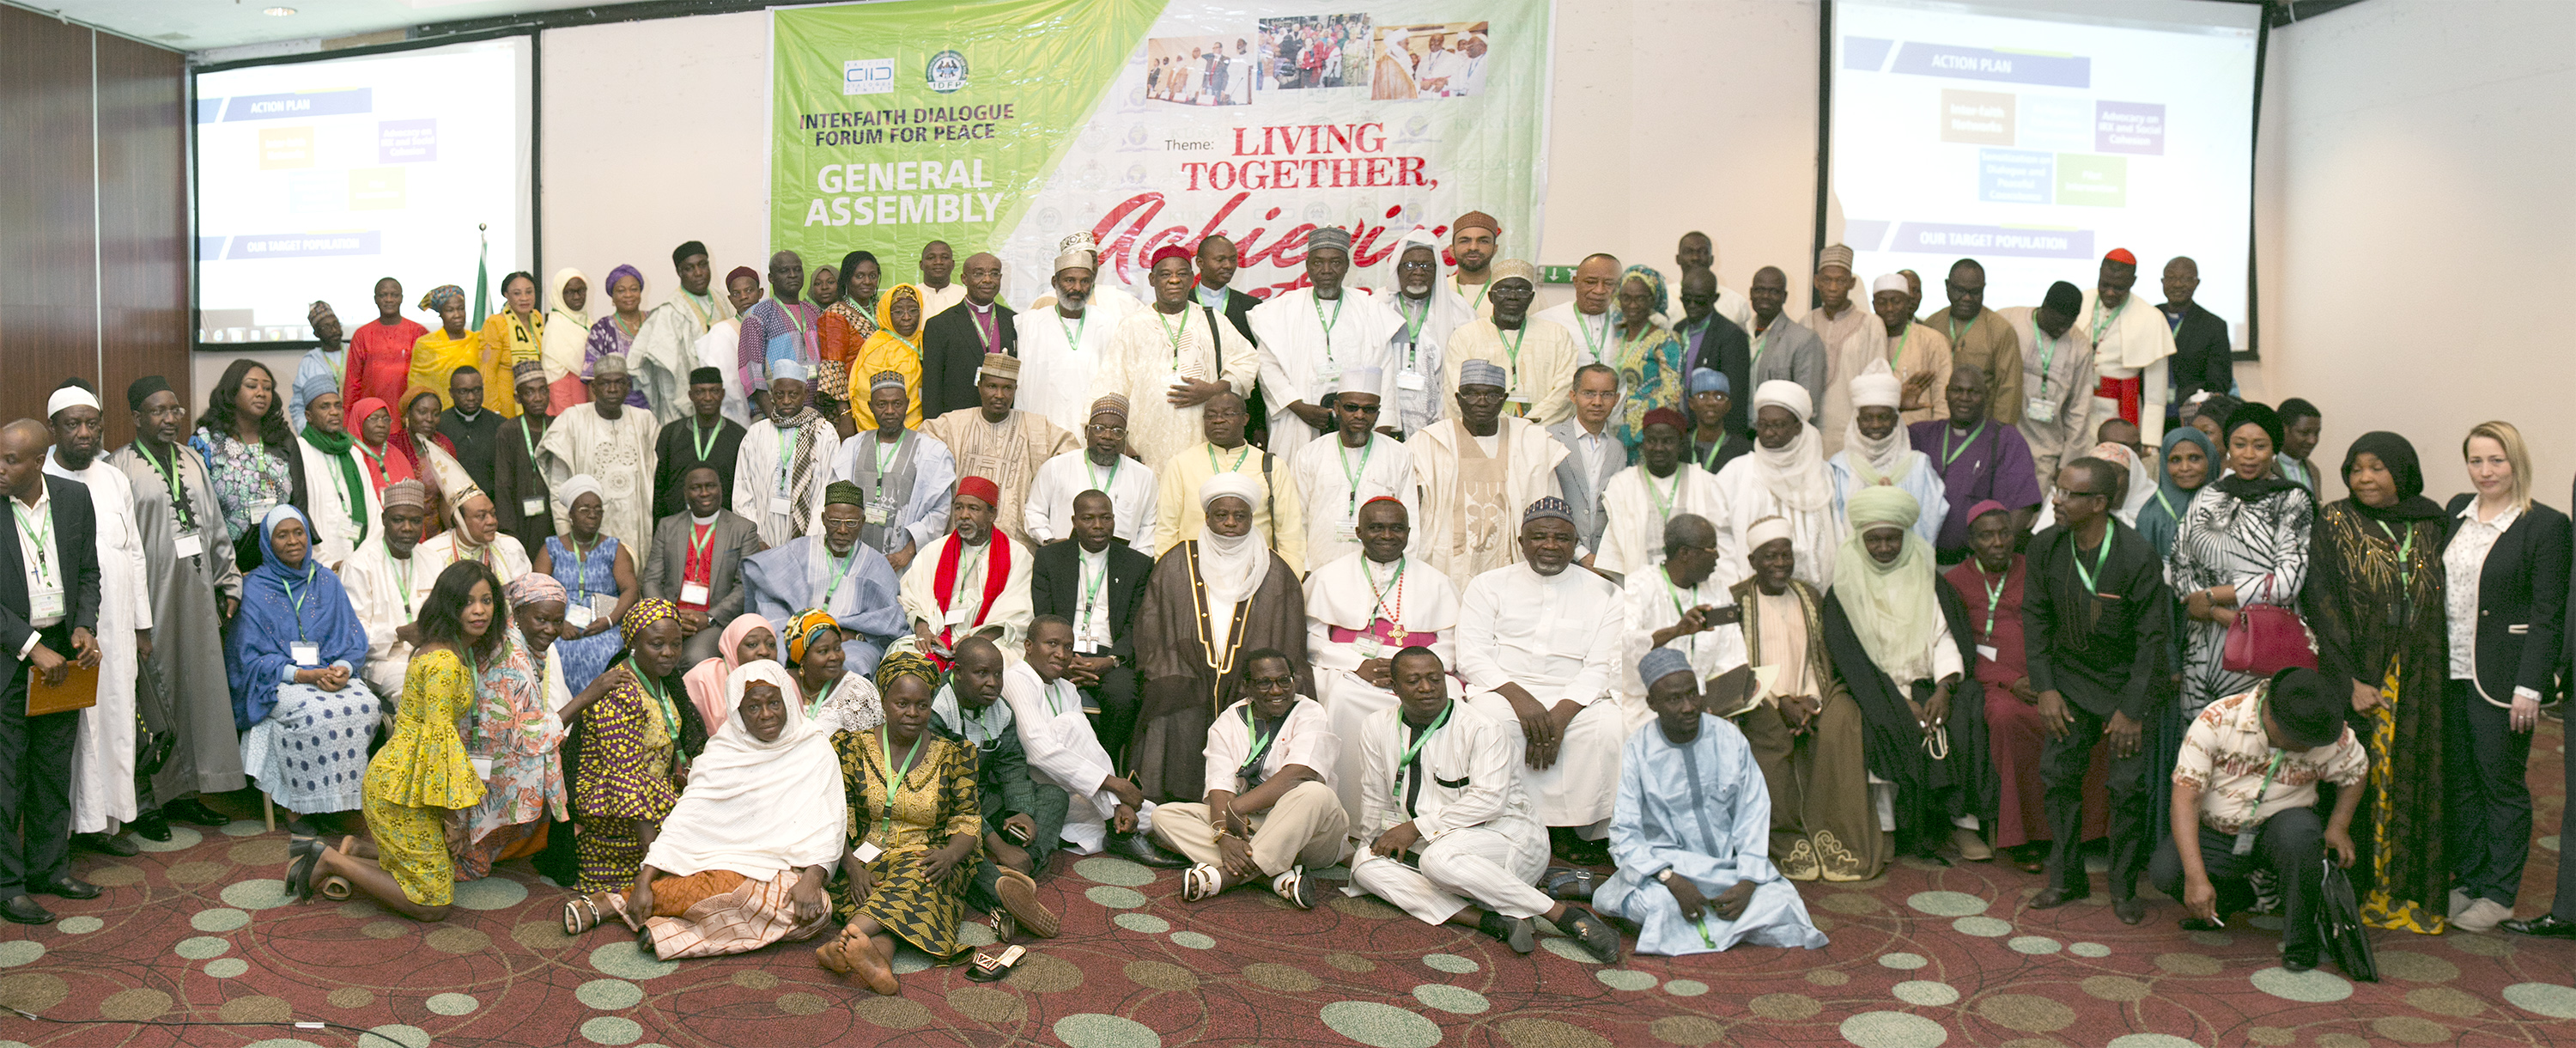 الحوار وسيلة للسلام والمصالحة بين أتباع الأديان في نيجيريا